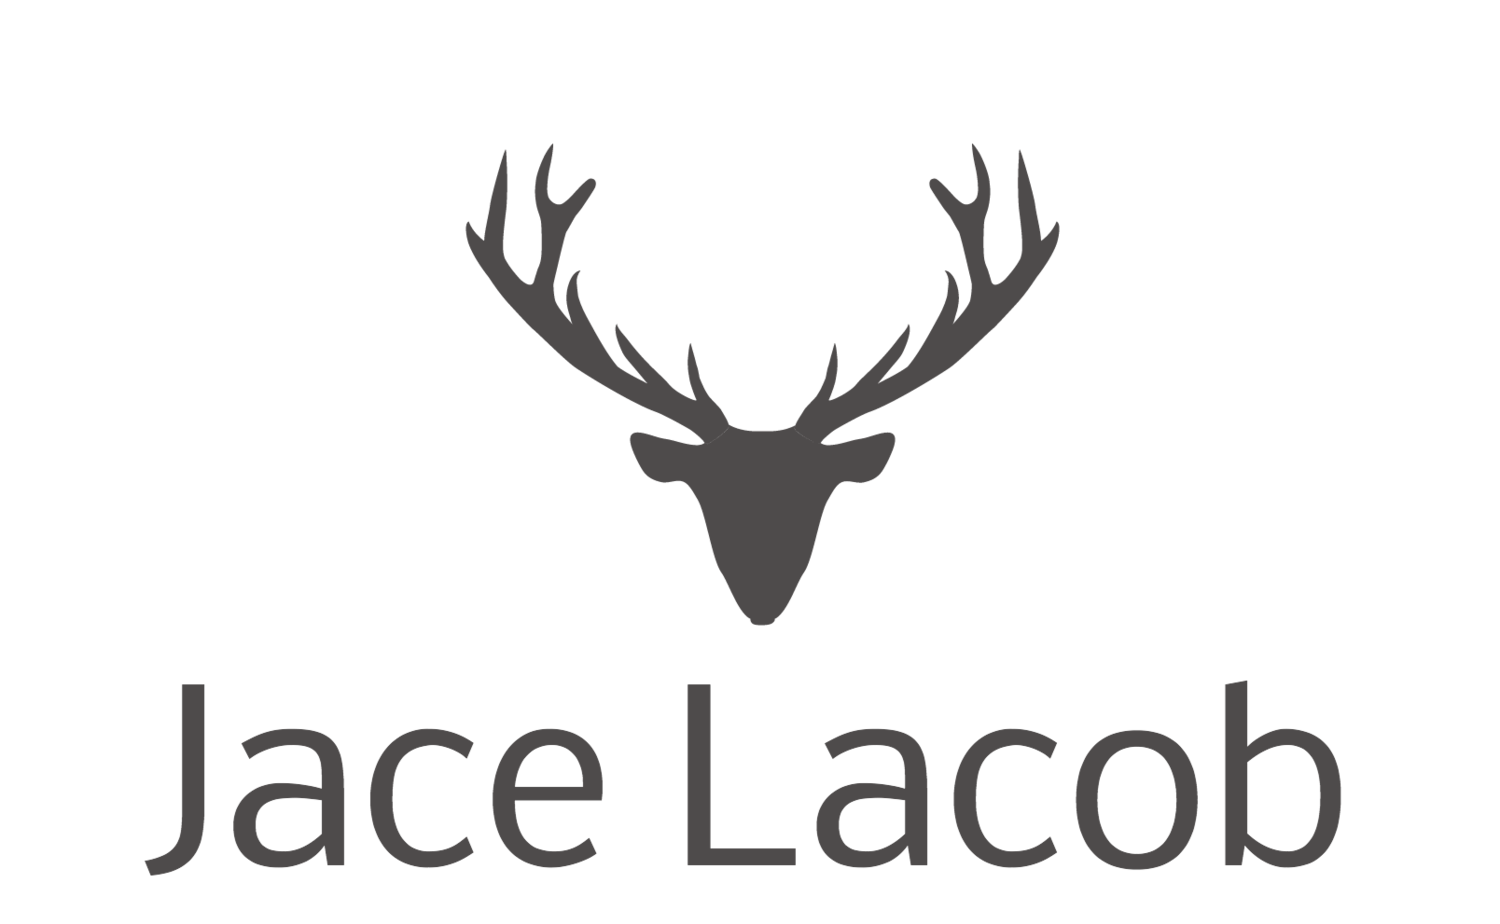 Jace Lacob